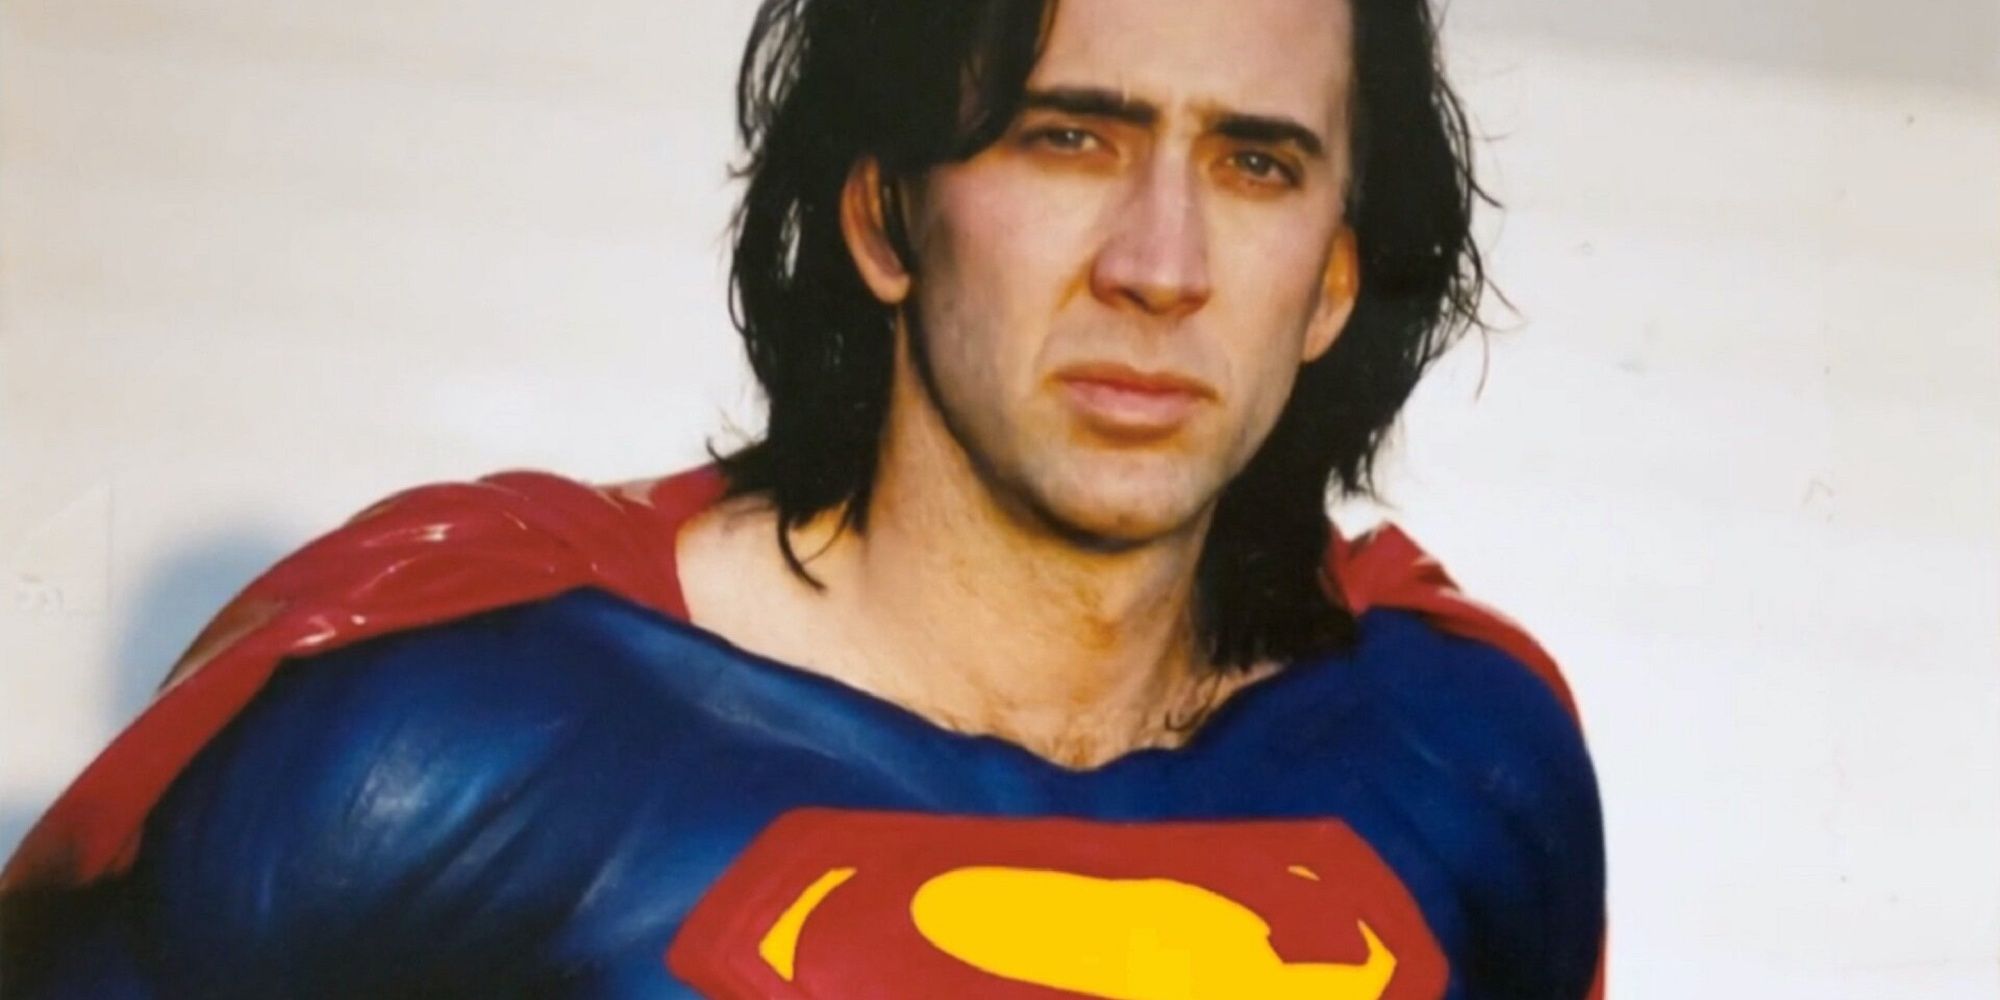 Nicolas Cage dans le costume de Superman lors des tests pour Superman Lives.